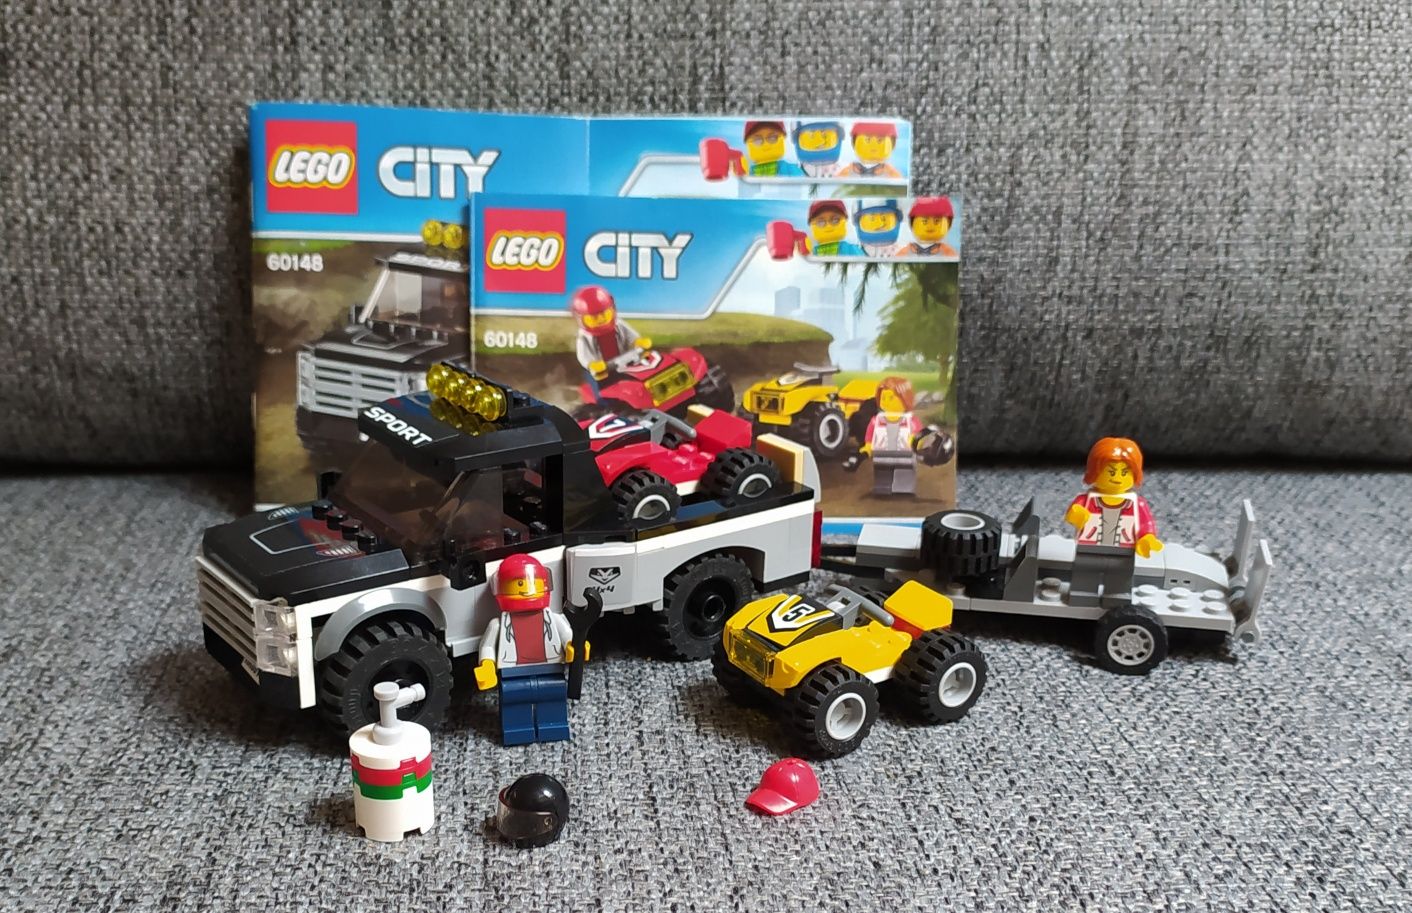 Zestaw klocków LEGO City 60148